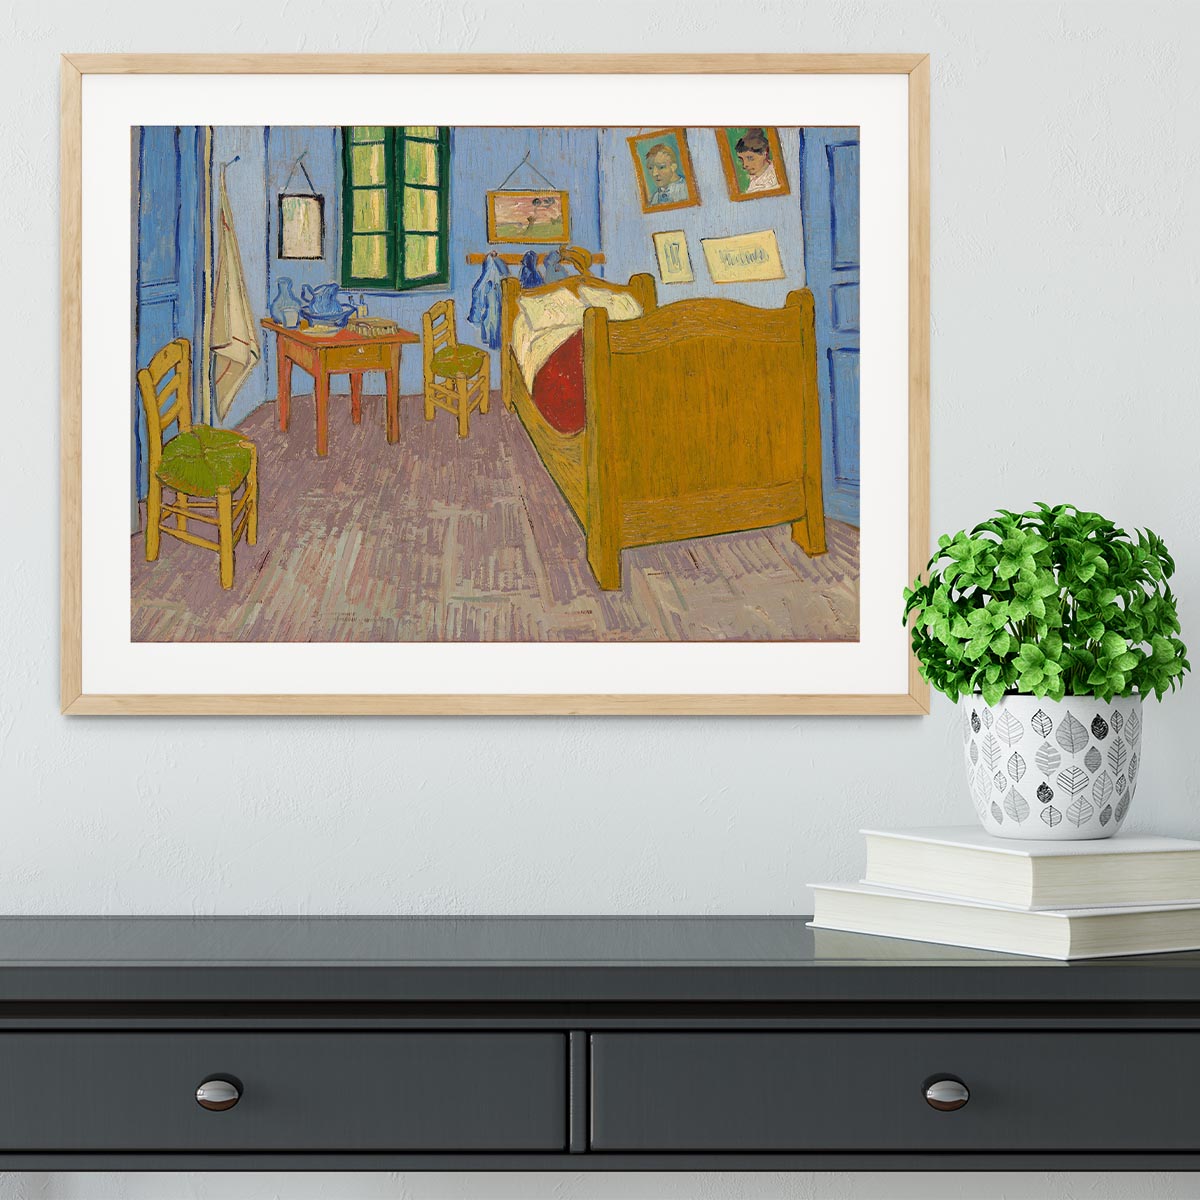 Vincents bedroom at Arles Framed Print - Canvas Art Rocks - 3